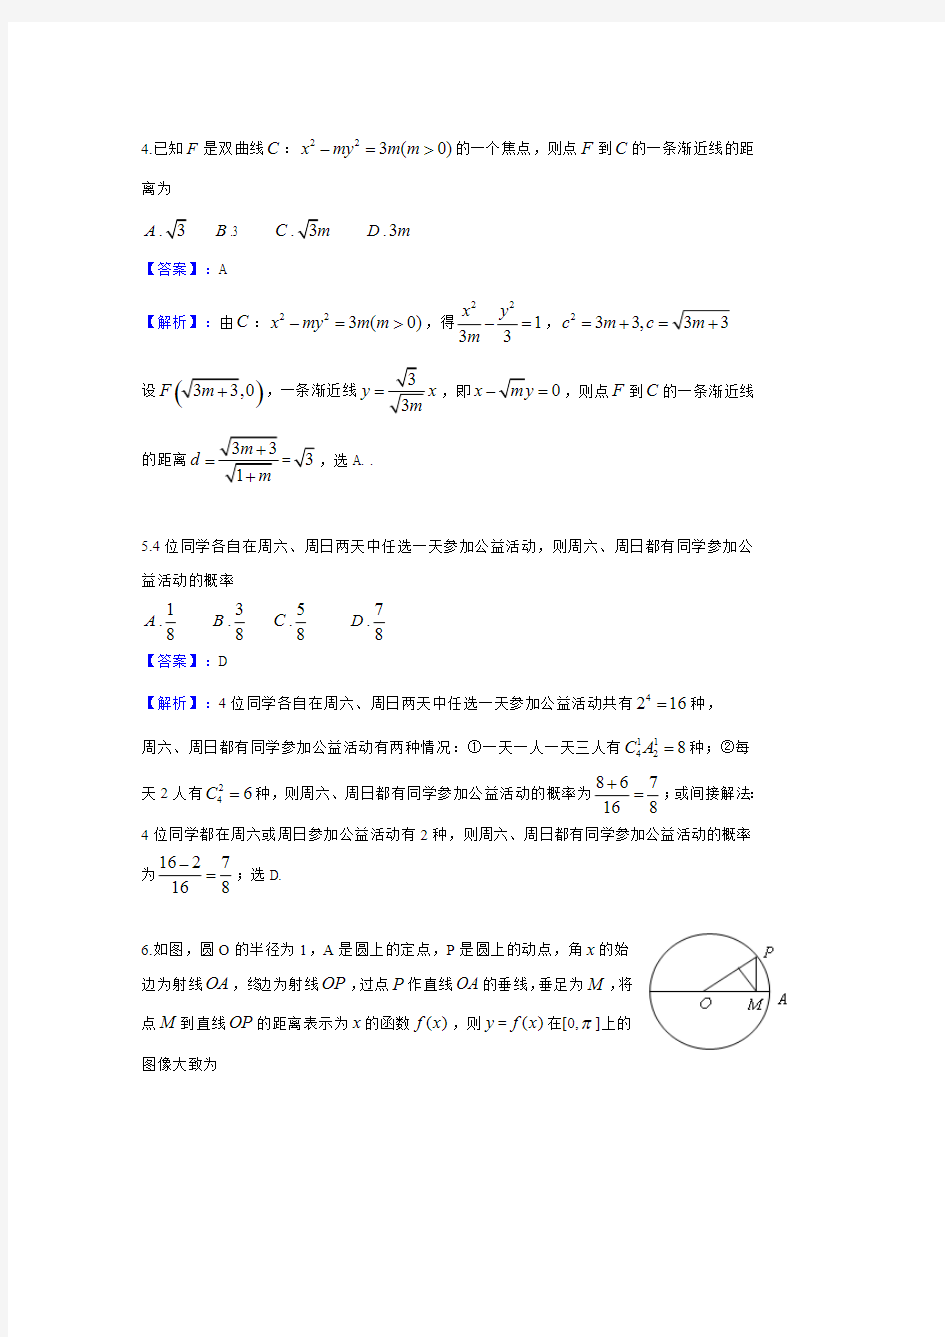 2014年高考新课标I卷理科数学试题及答案(河南 山西 河北)